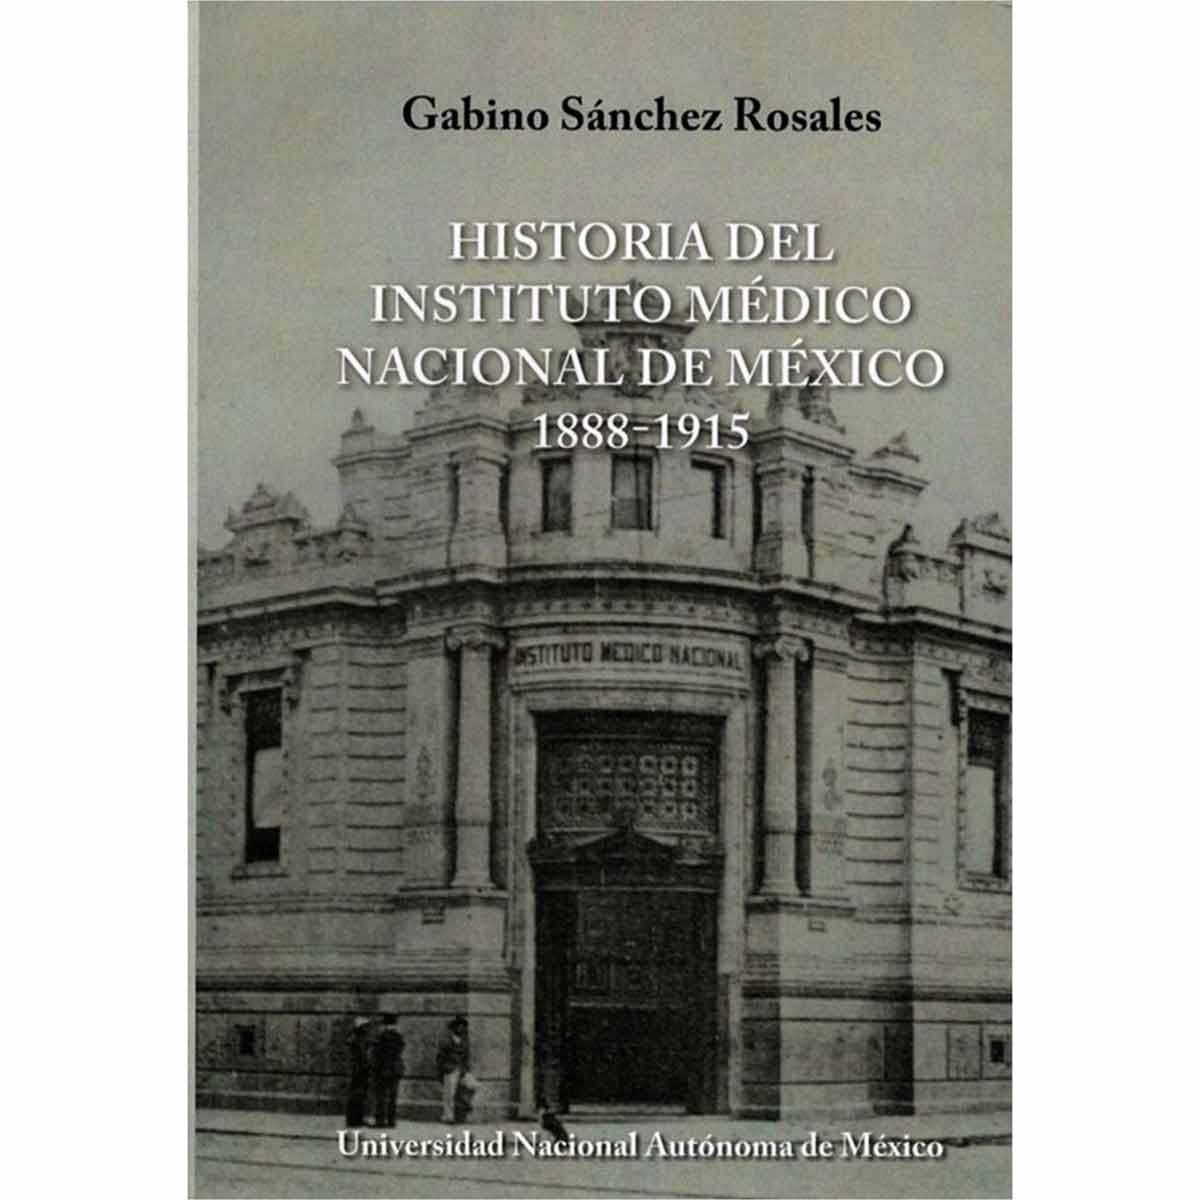 HISTORIA DEL INSTITUTO MÉDICO NACIONAL DE MÉXICO 1888-1915